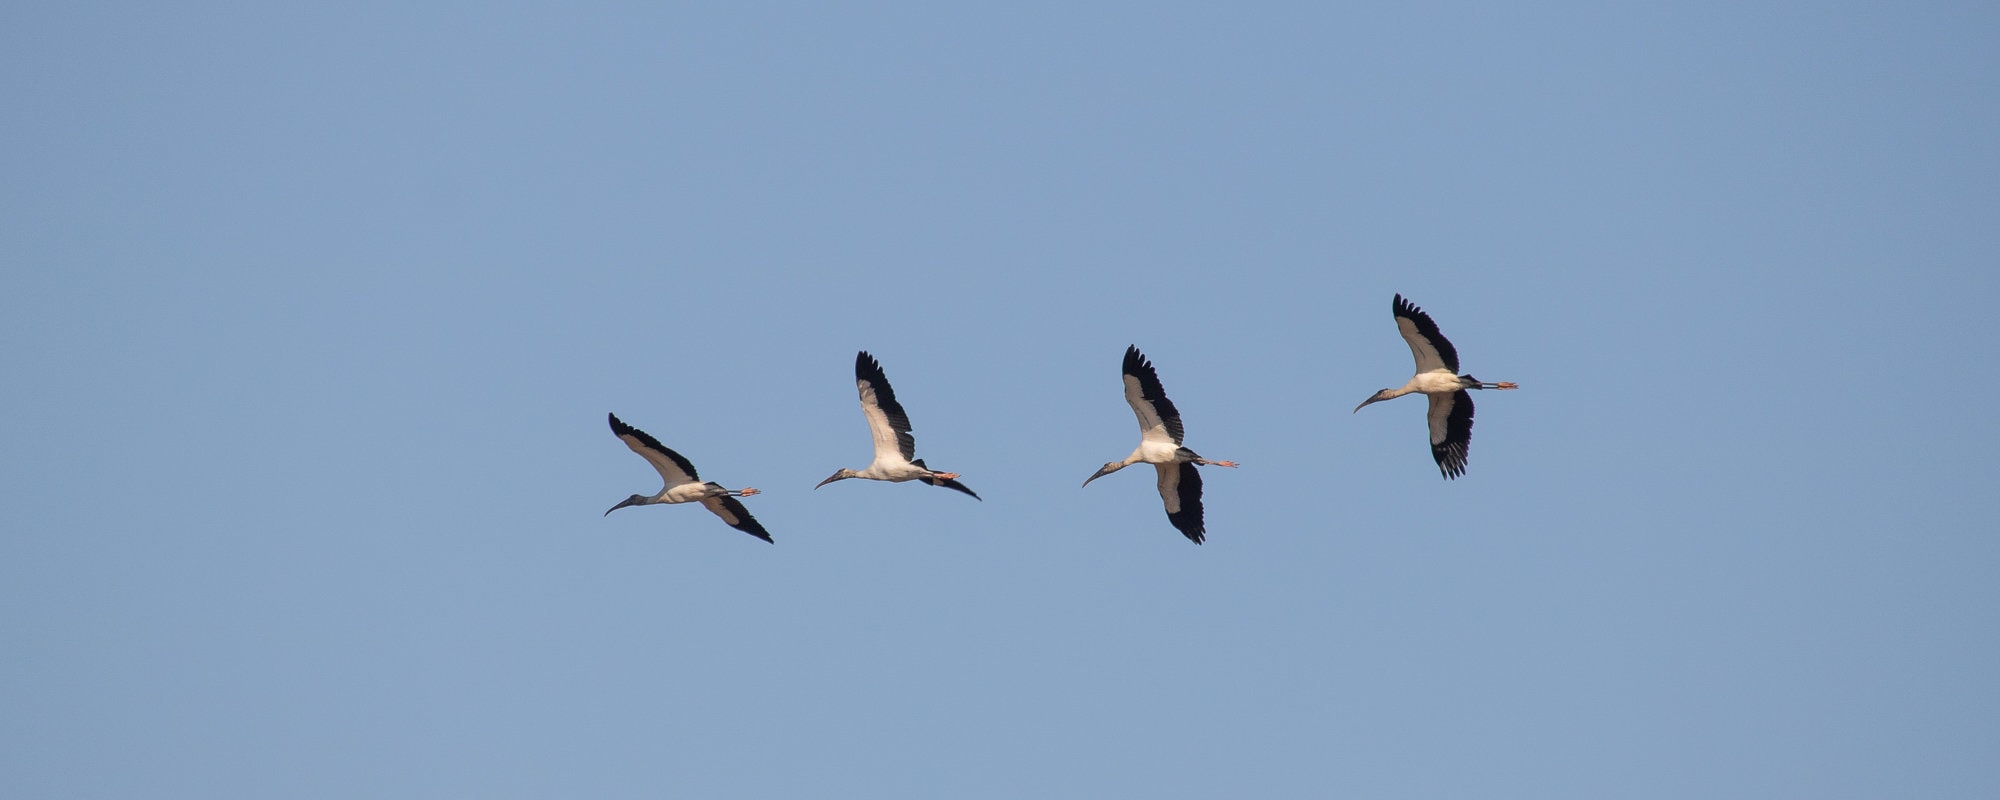 Everglades National Park - Wood storks flying above Shark Valley